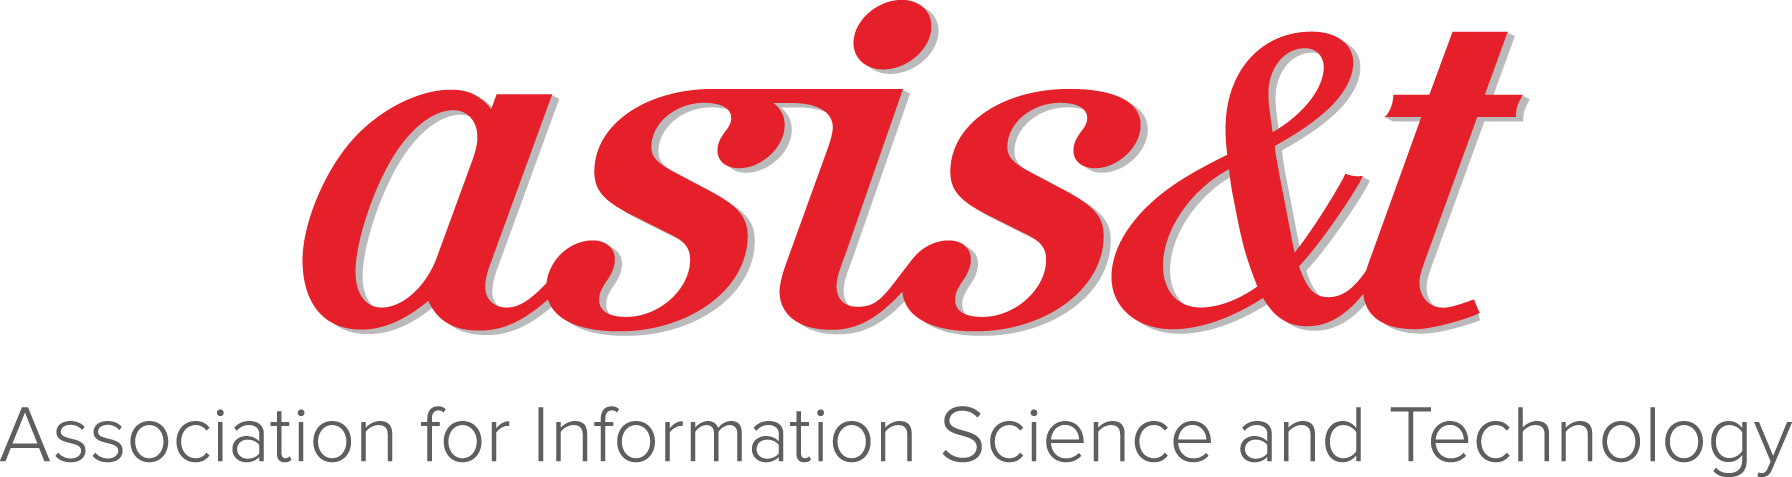 ASIS&T logo